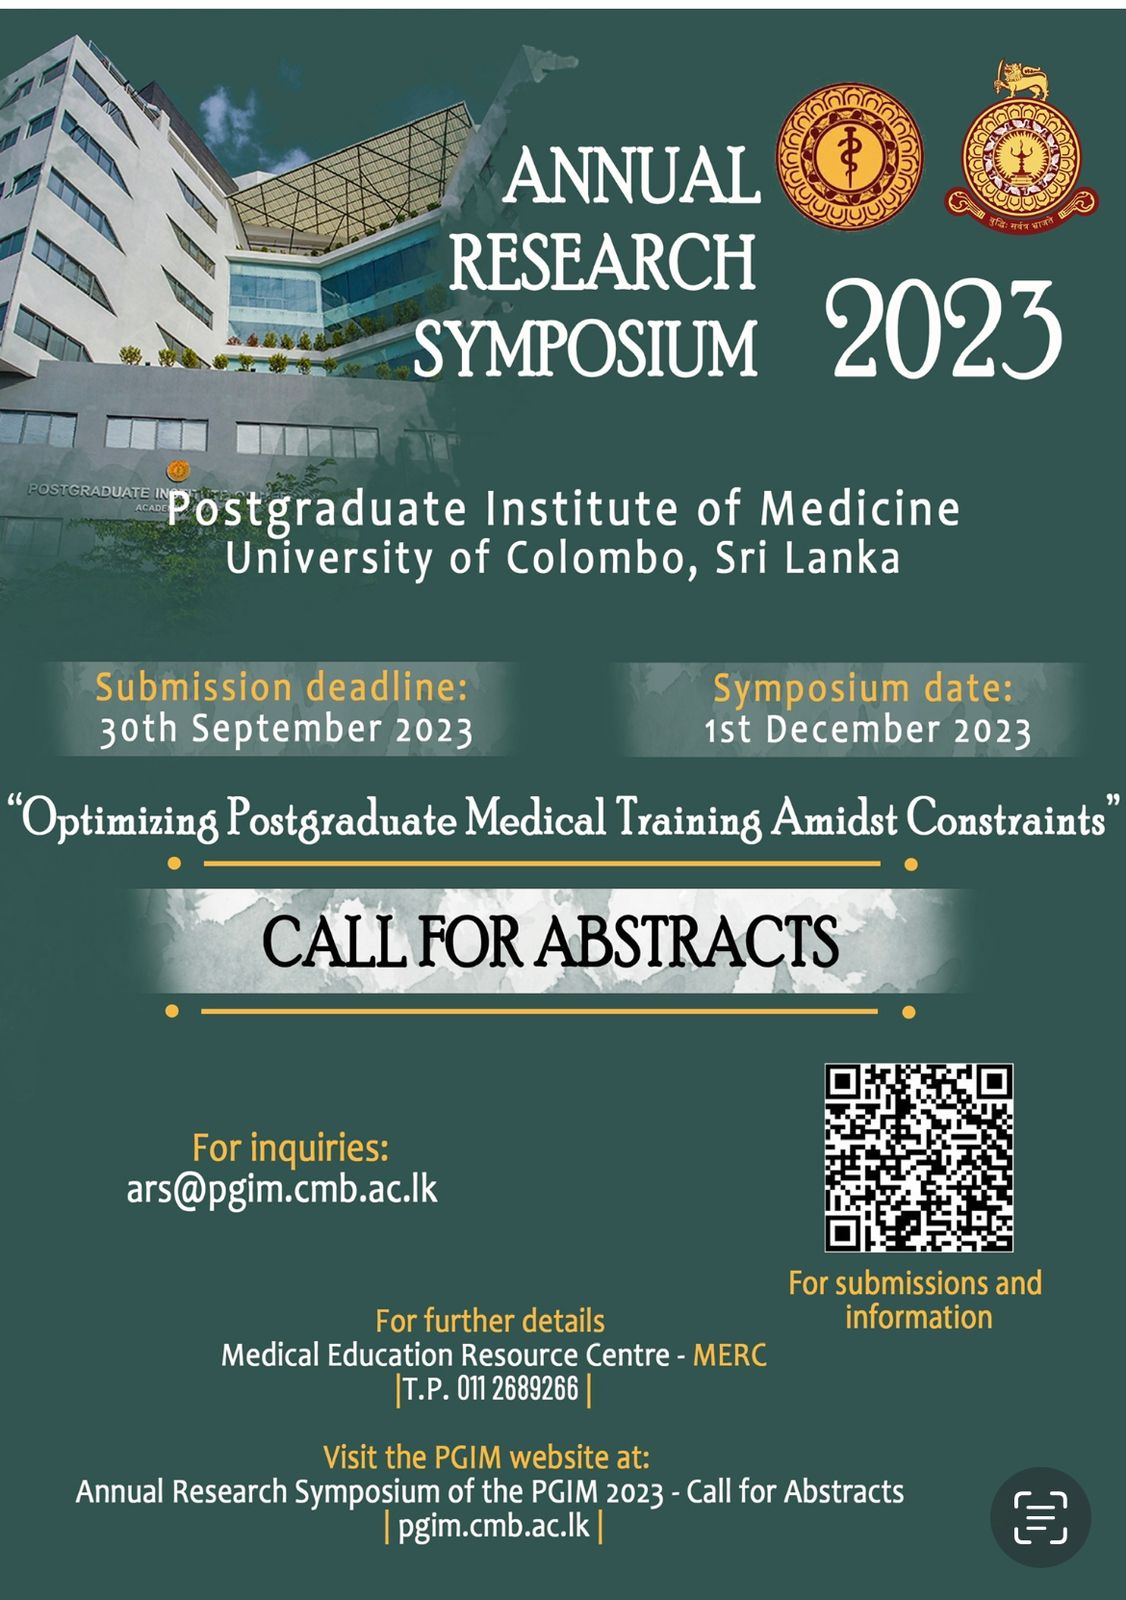 The Annual Research Symposium (ARS)-PGIM 2023